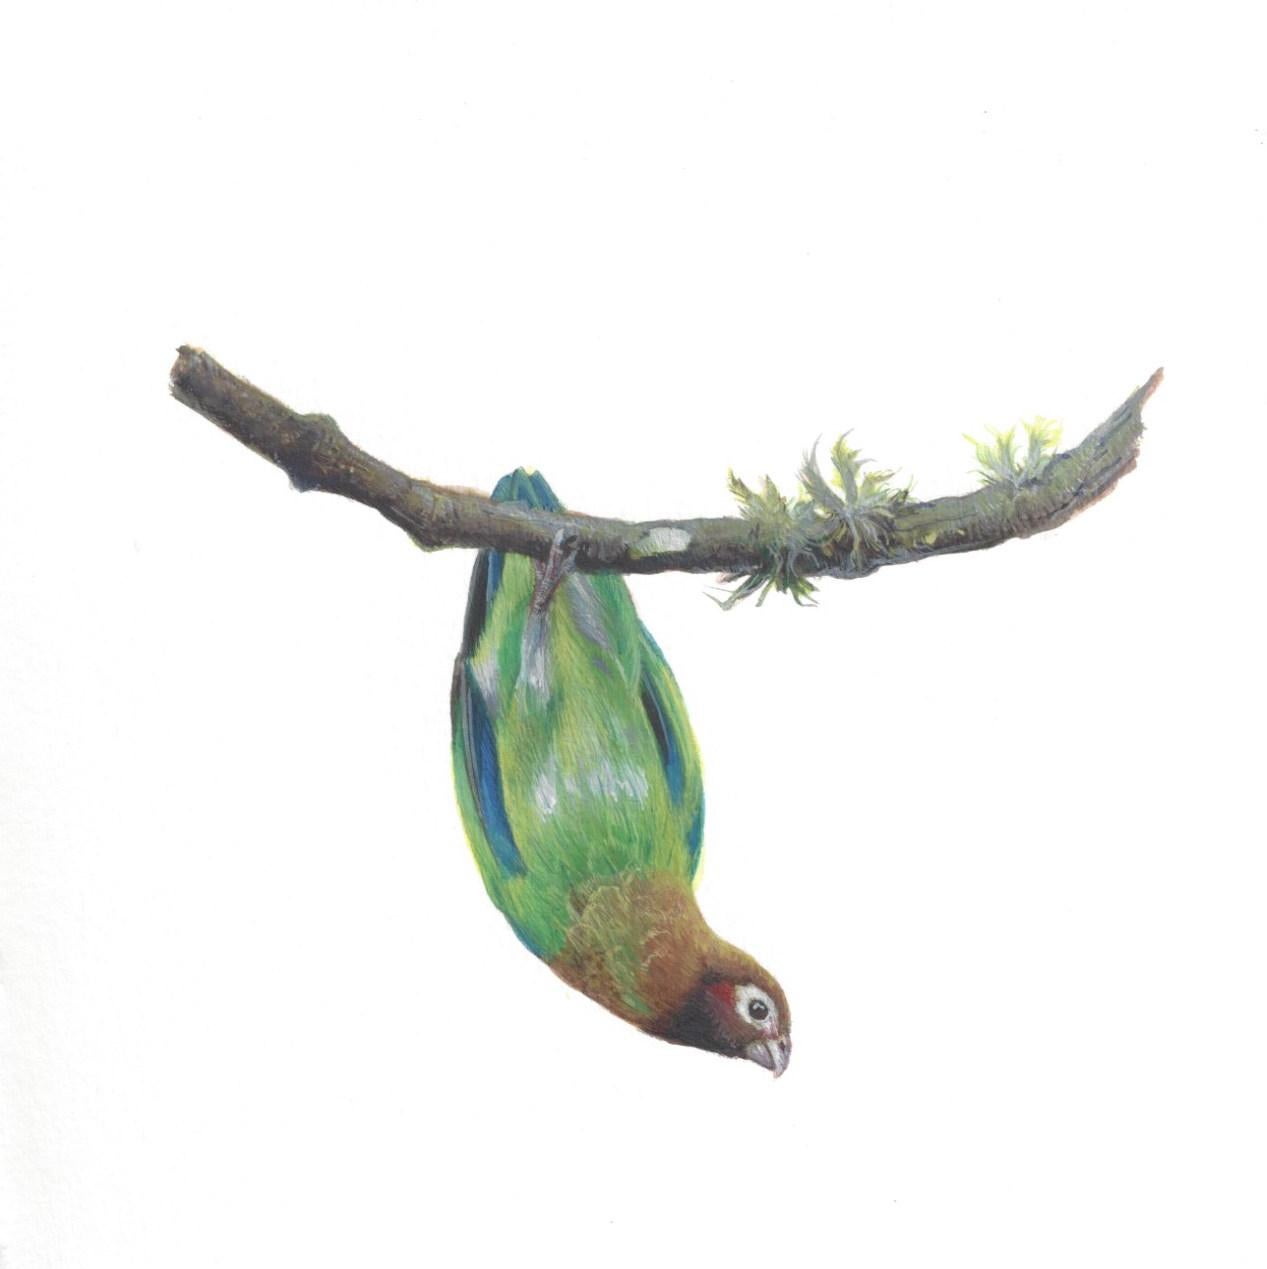 Dina Brodsky verwendet in "Brown-Hooded Parrot" Gouache und Aquarell auf Papier, um den vielfarbigen Vogel darzustellen, der bedrohlich an einem dünnen Ast hängt. Der kleine Vogel reckt seinen Hals, krümmt seinen Körper in einem sanften Bogen und